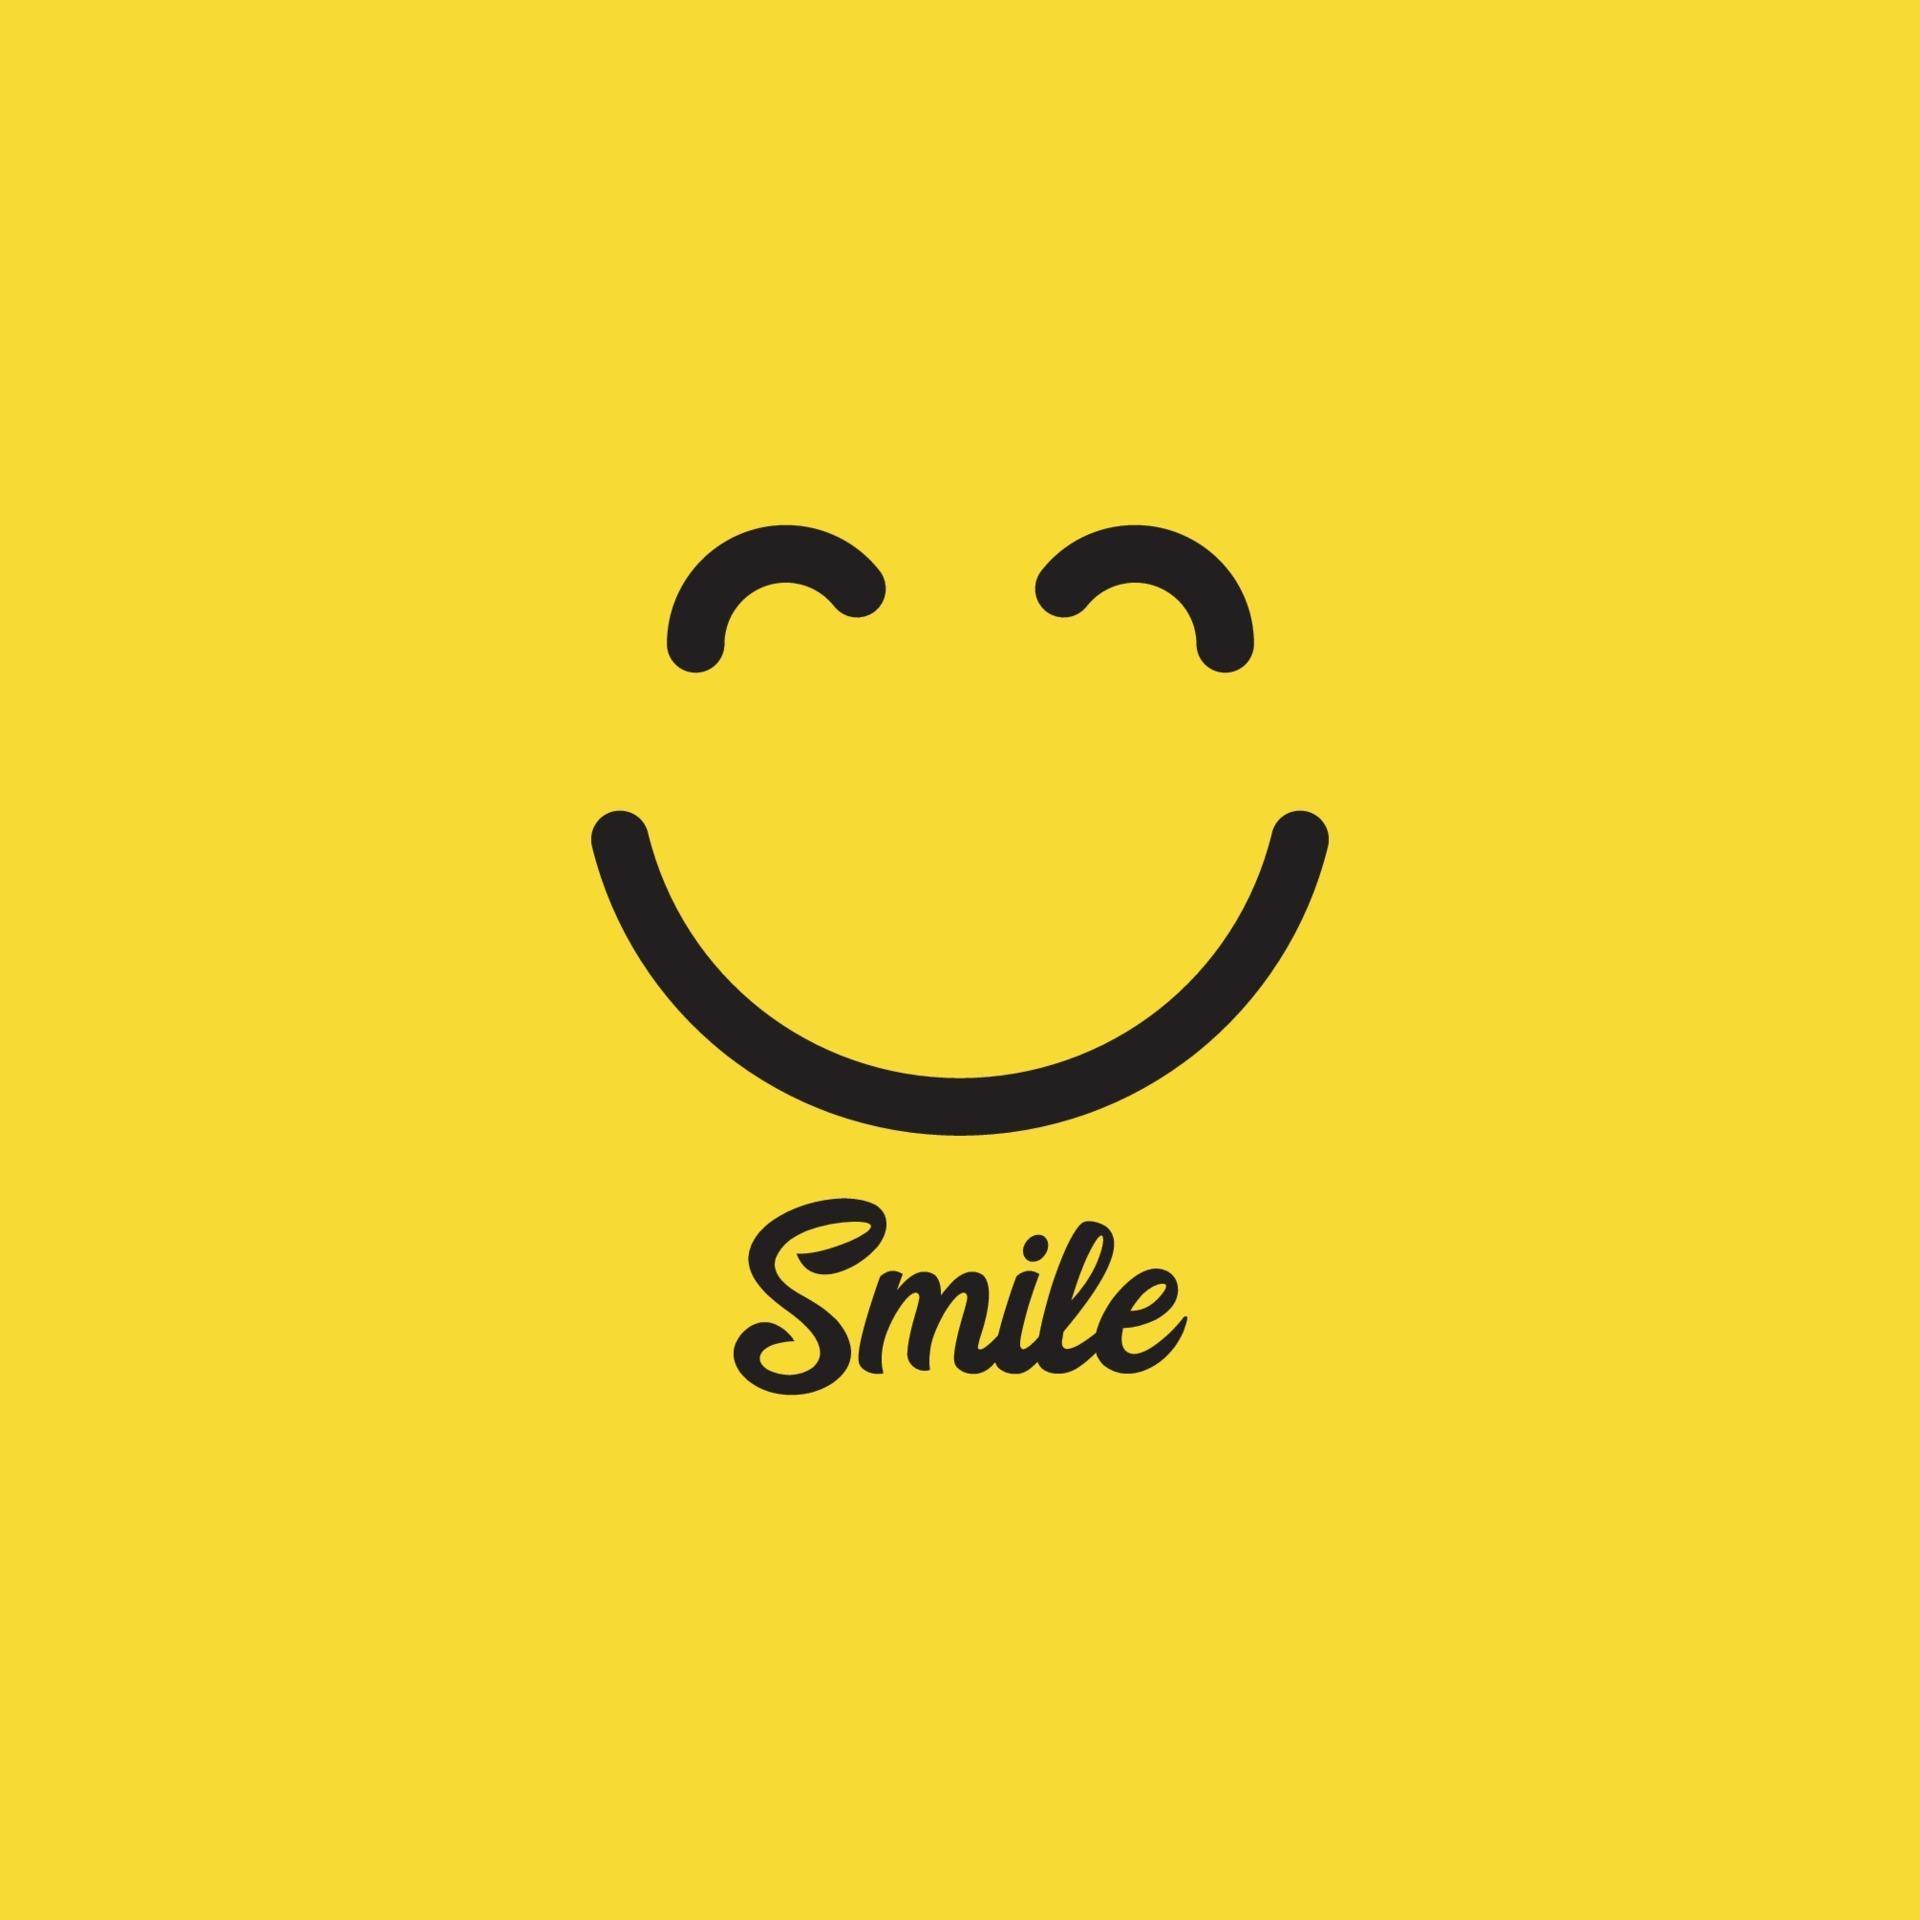 Smile Smile